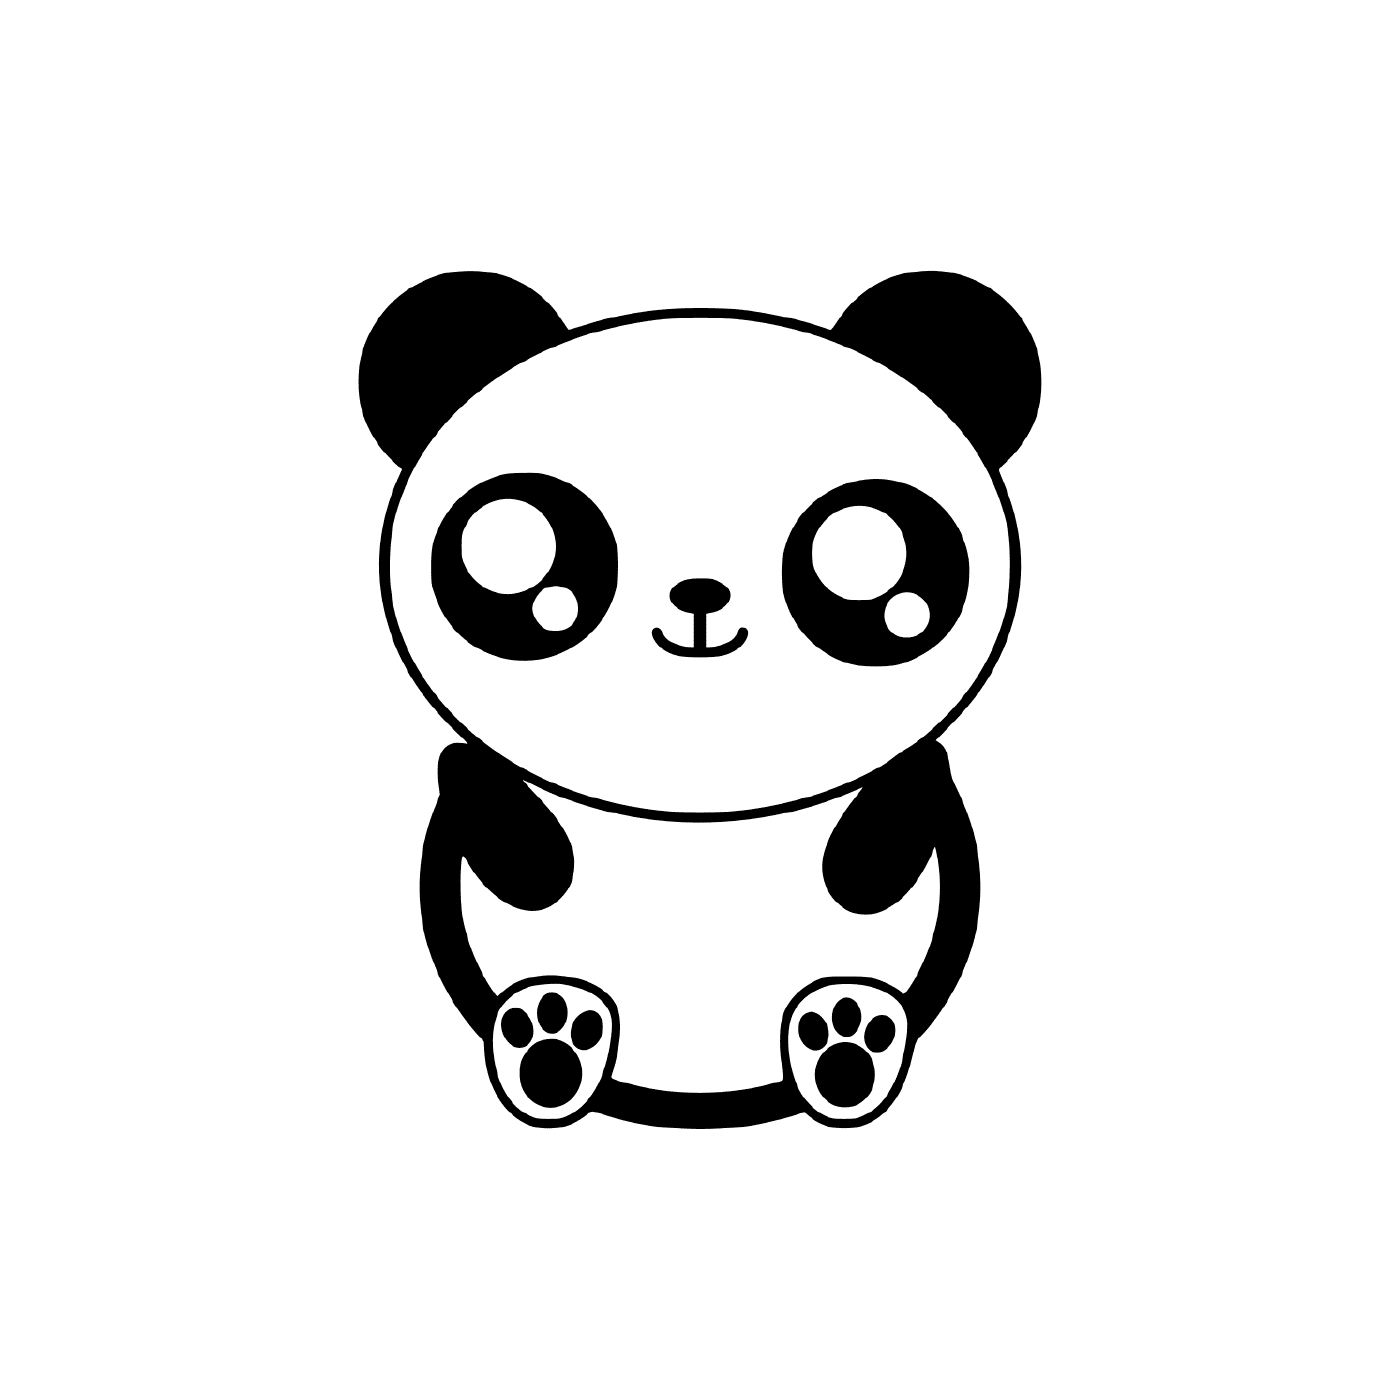  प्यारा प्यारा नया पांडा 